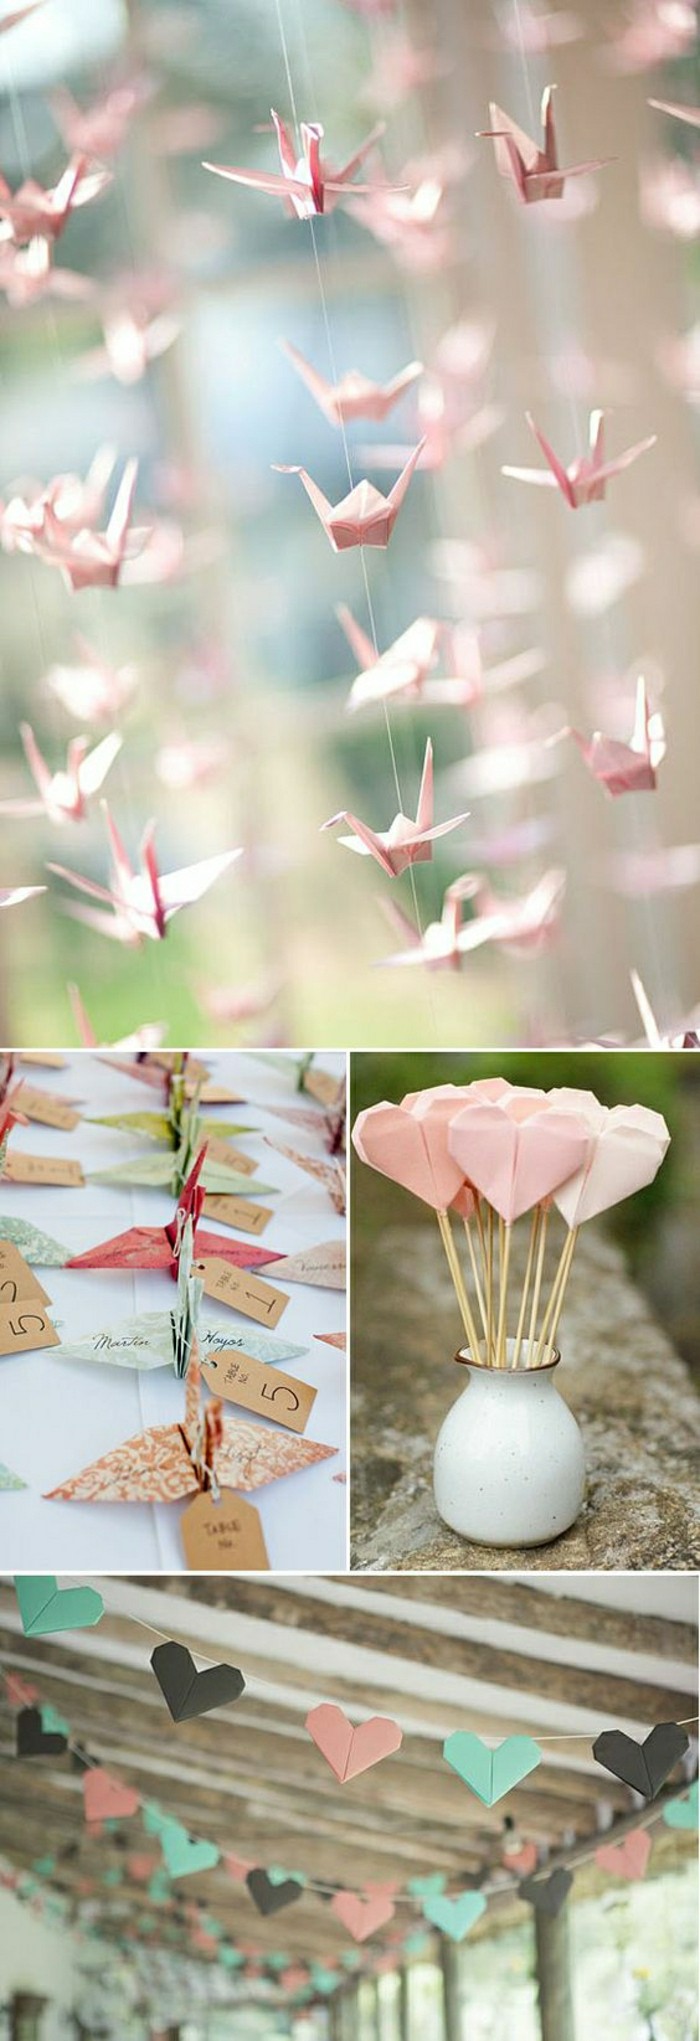 0-originale-decoration-mariage-en-papier-coloré-en-rose-comment-bien-decorer